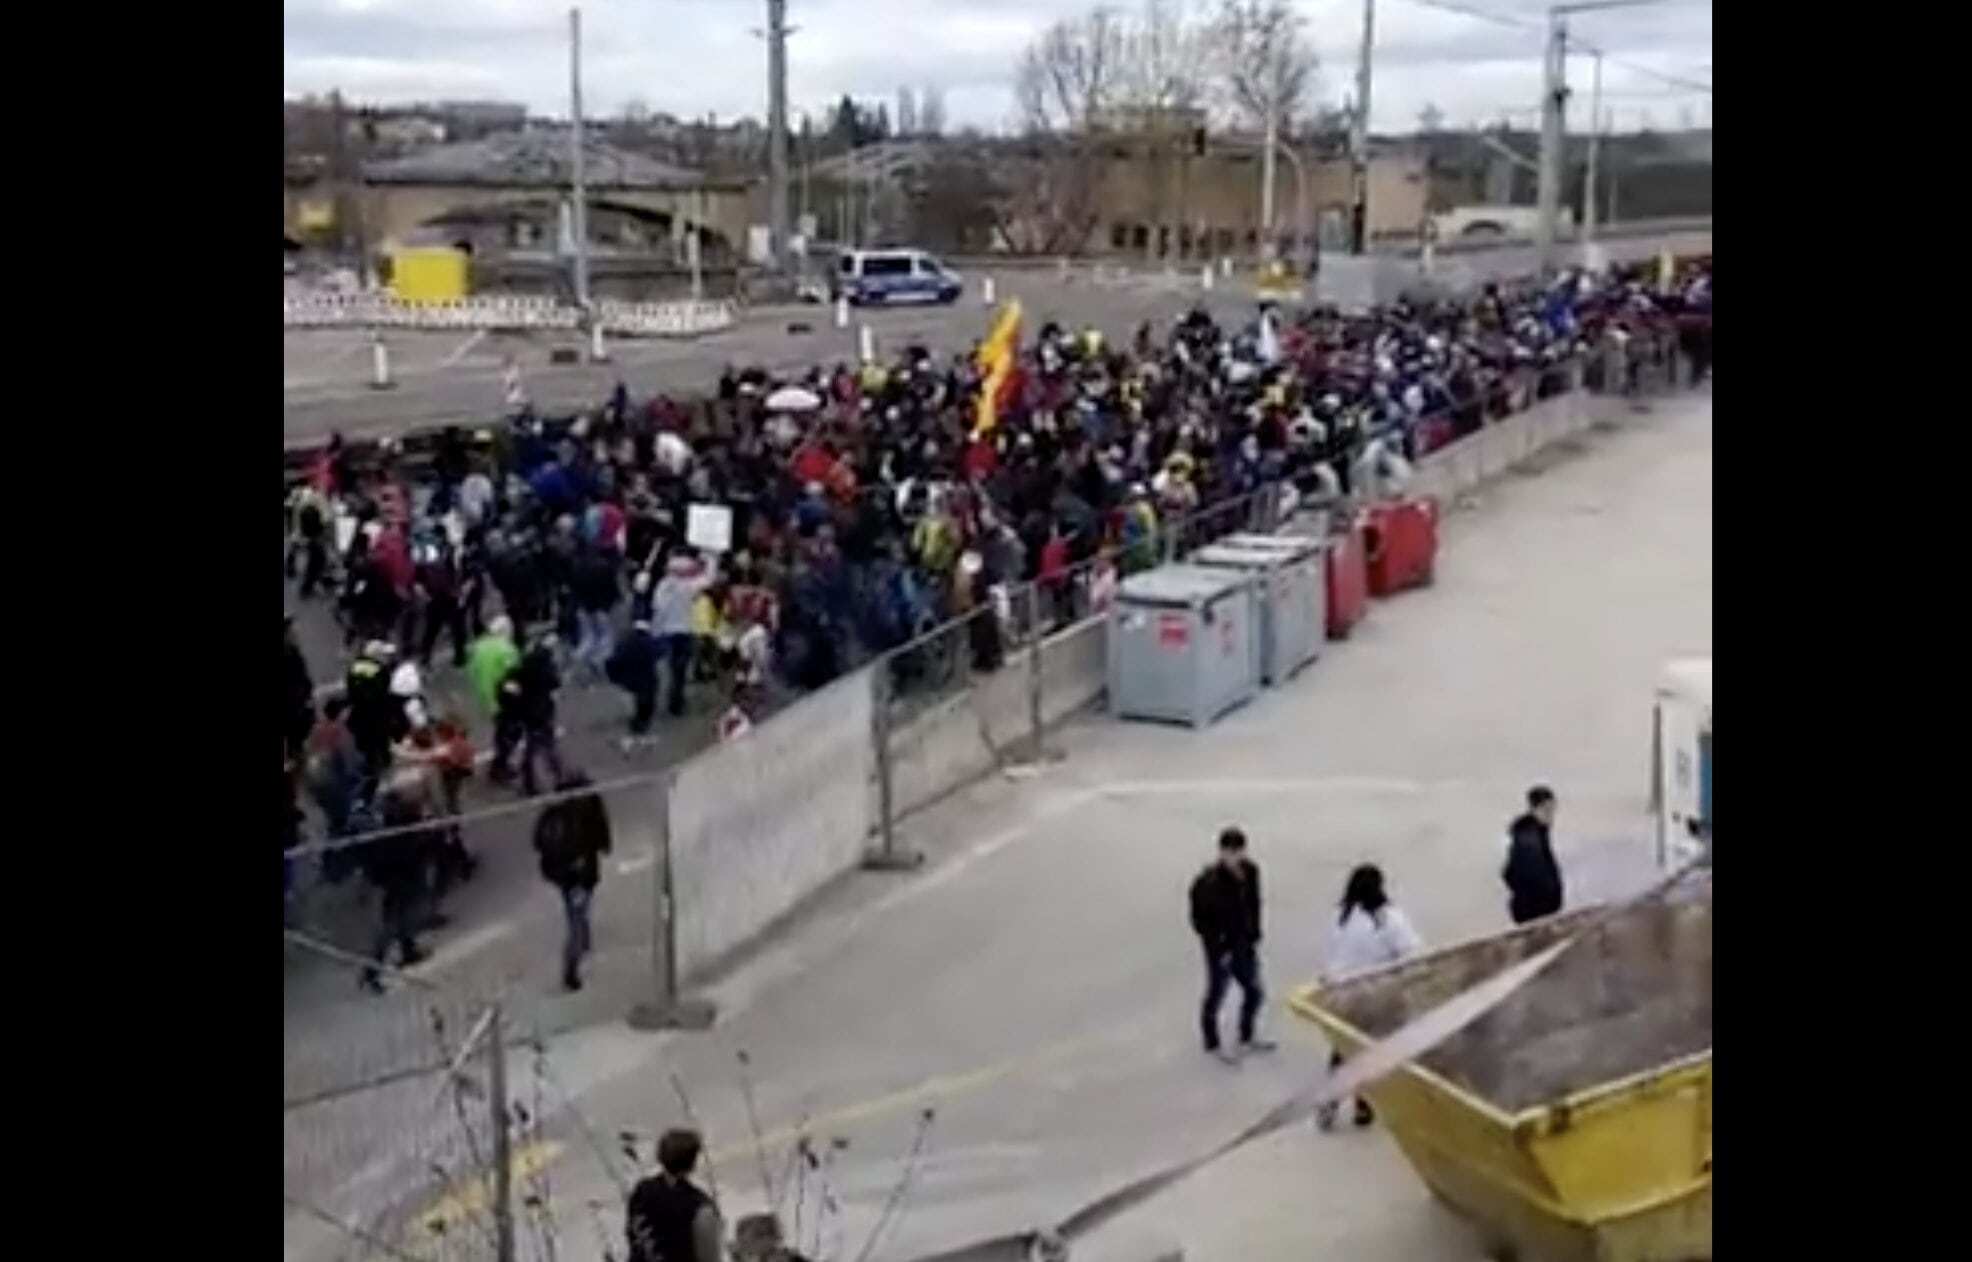 ΜΠΟΥΜ!!! – Ξεσηκώθηκε ο κόσμος στη Στουτγκάρδη κατά της κορωνοδικτατορίας! Ουρά 5 χιλ. από Έλληνες και μη διαδηλωτές!!!